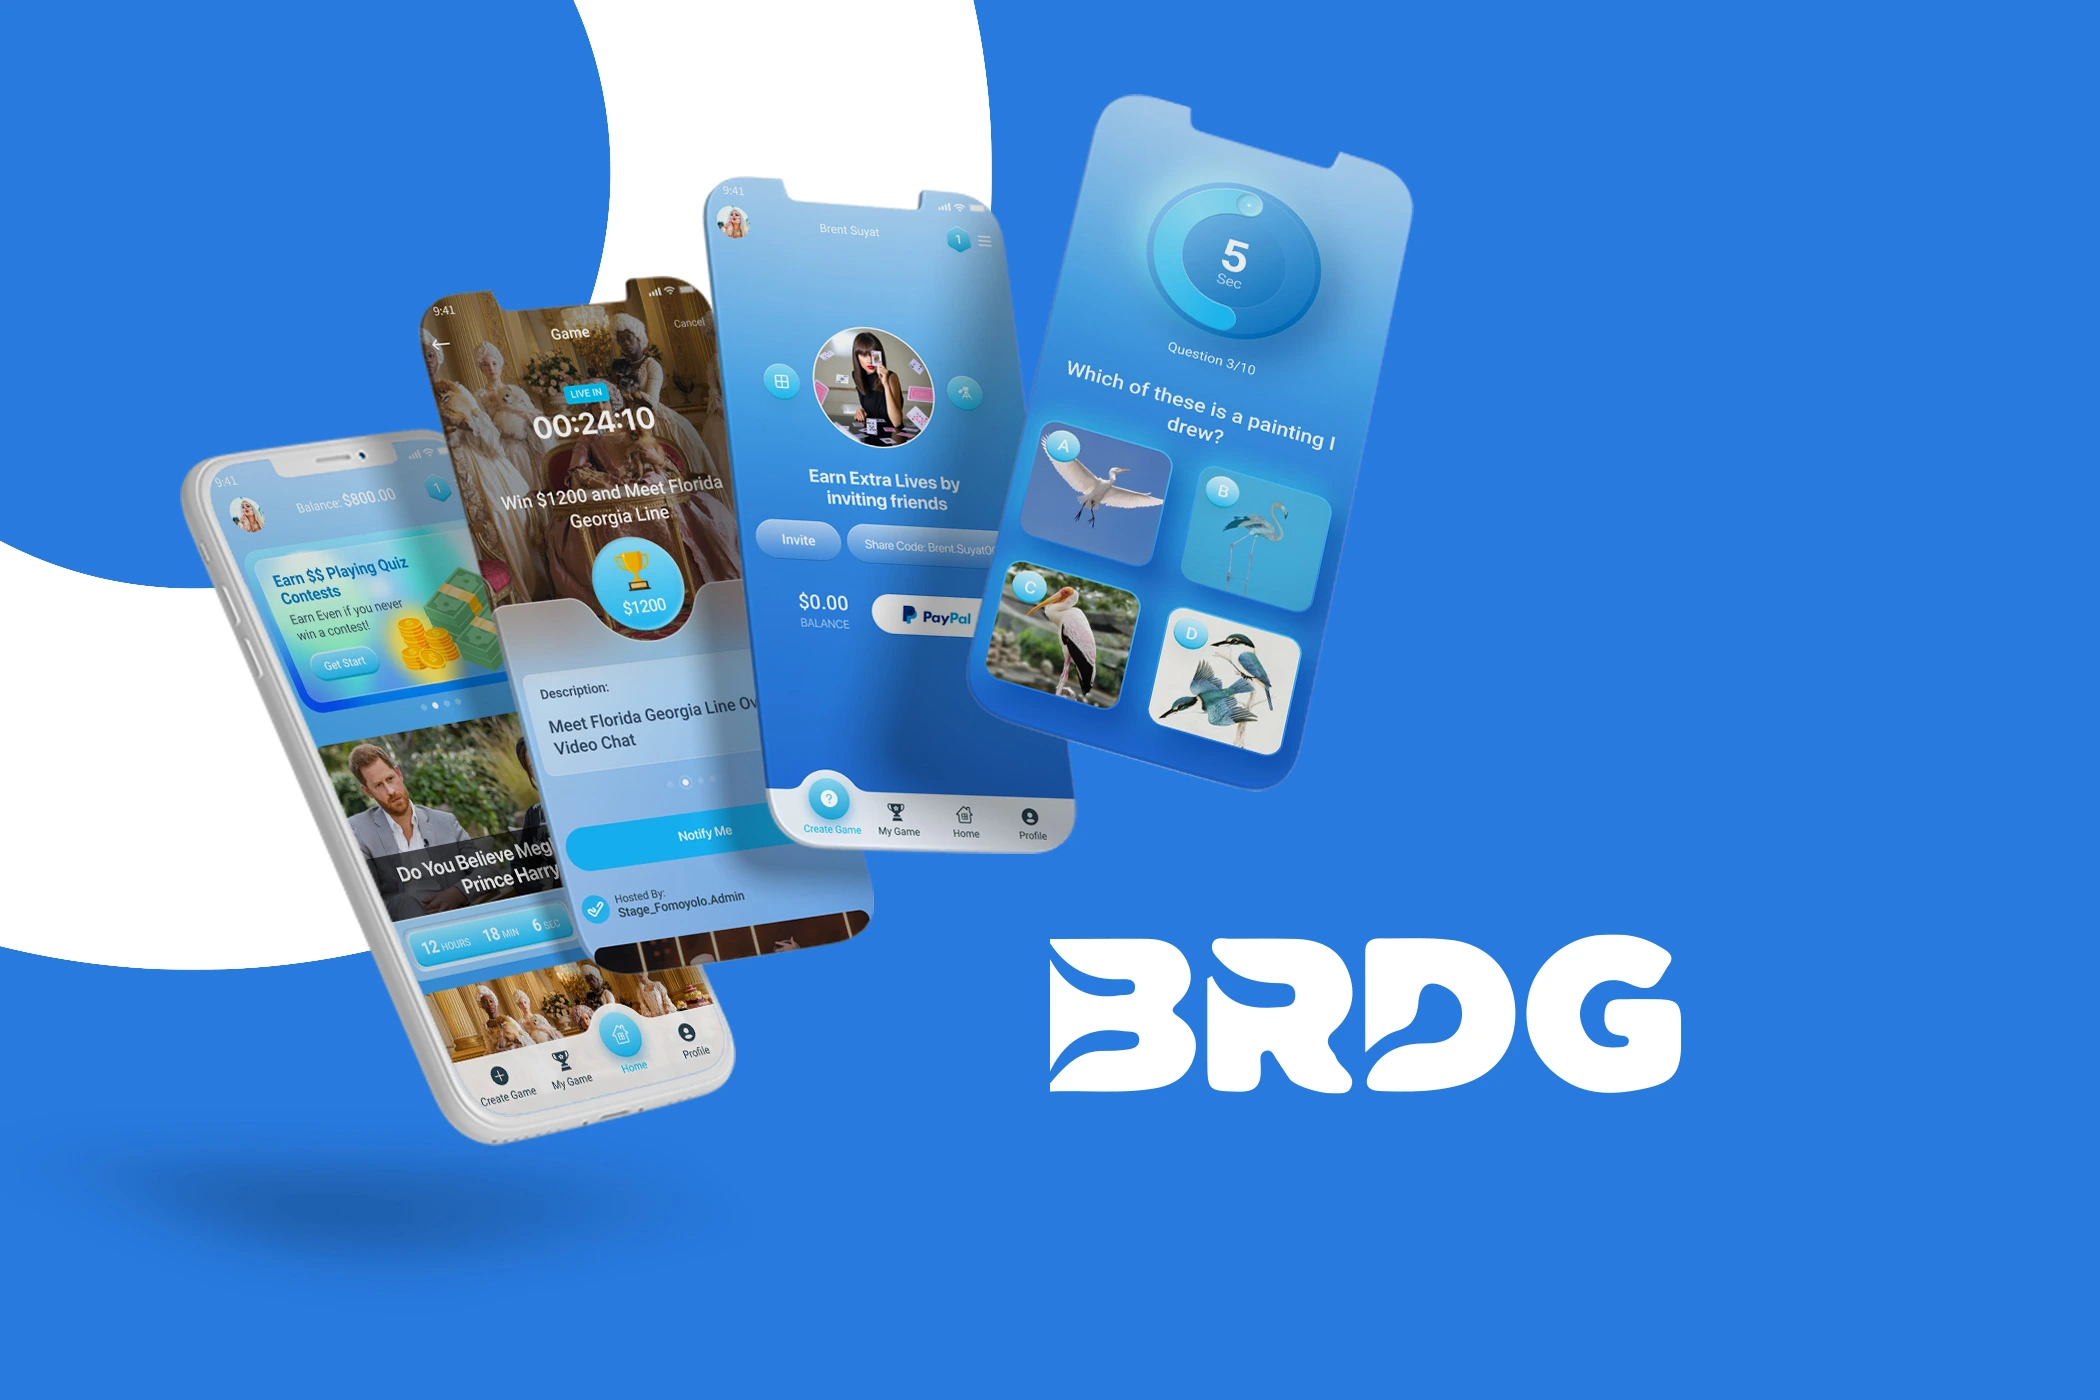 BRDG (Entertainment Mobile App)